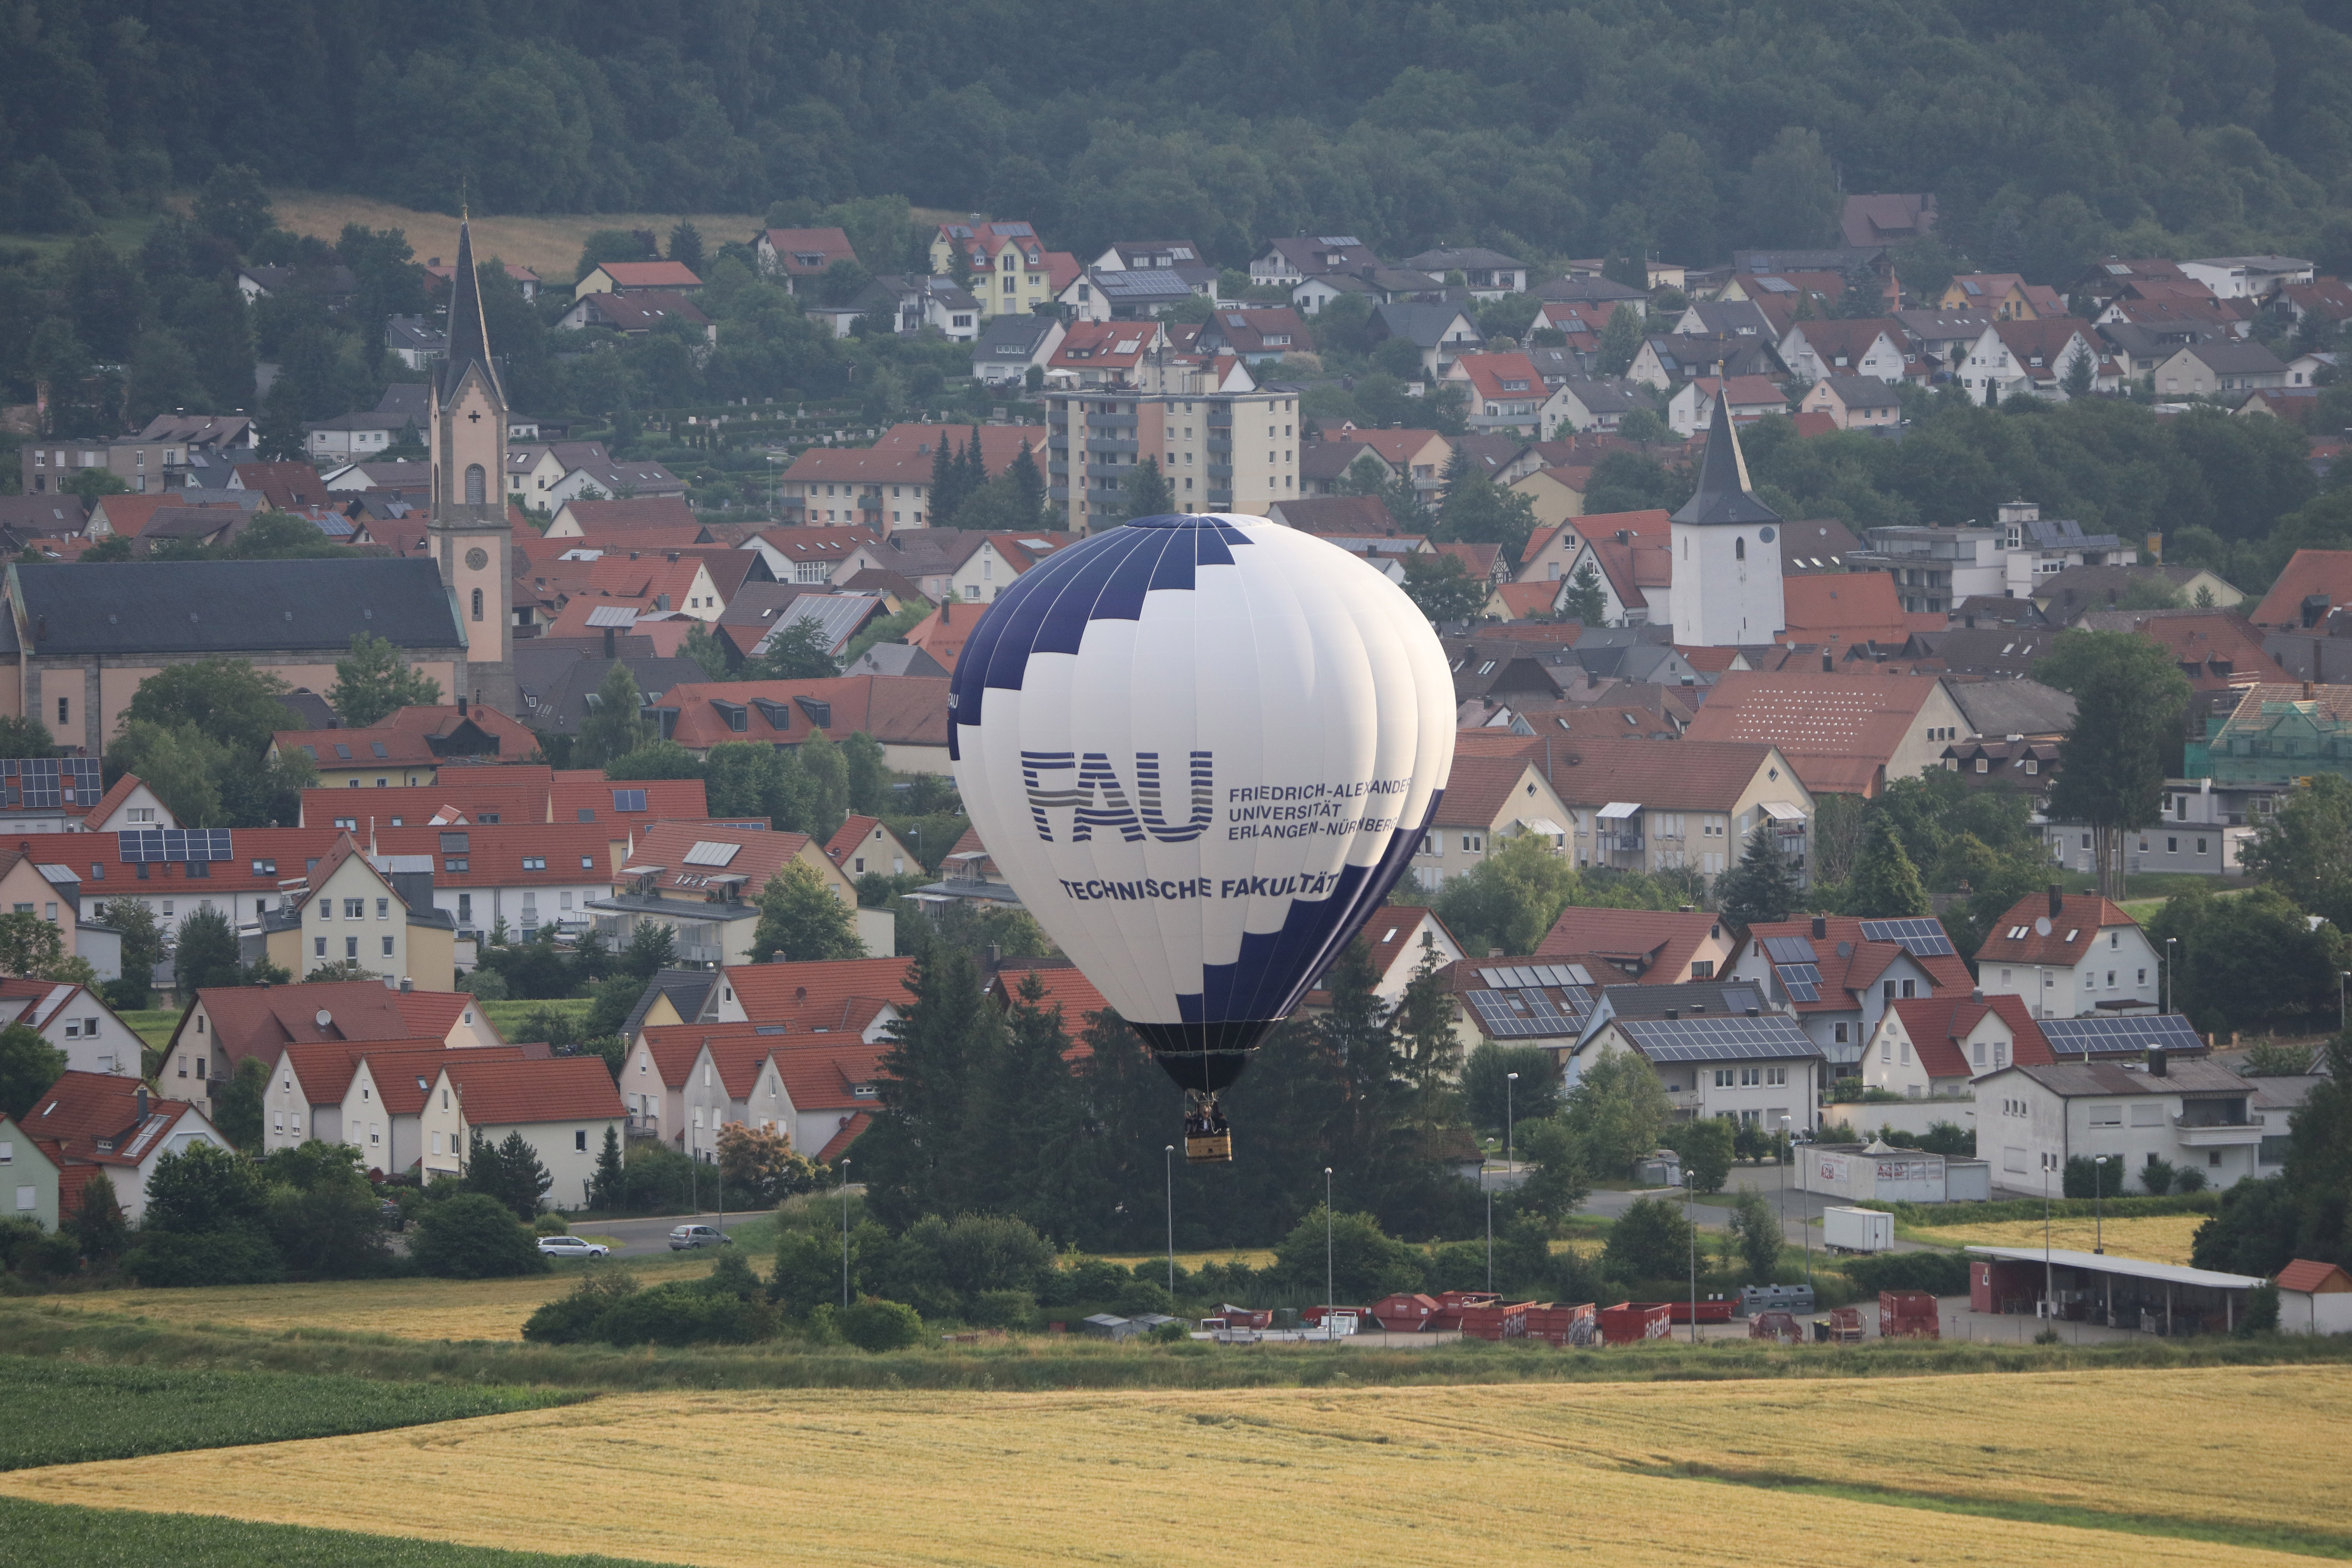 Zum 50. Geburtstag hat die TechFak der FAU einen Ballon gesponsert bekommen. Tauffahrt war am 2. Juli 2016 in Begleitung weiterer Ballons in der Fränkischen Schweiz. (Bild: FAU/Kurt Fuchs)